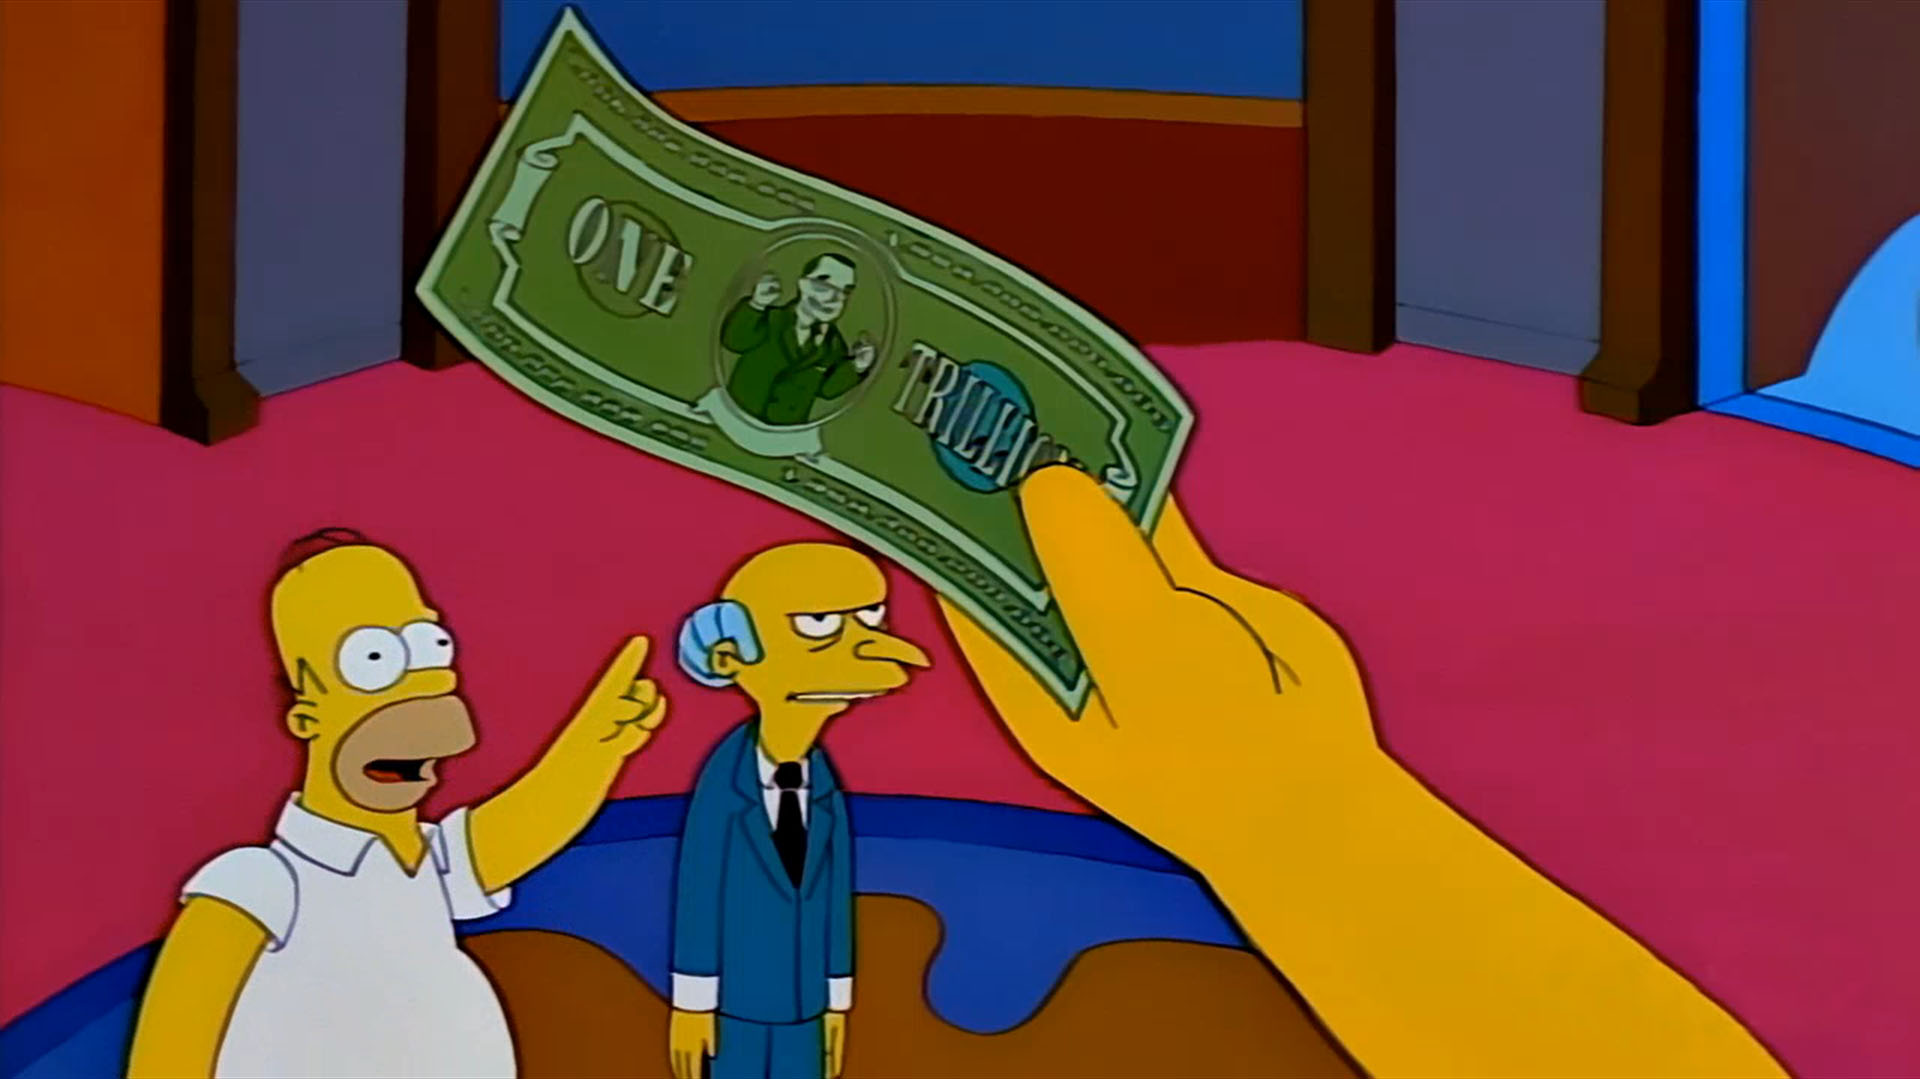 En la ficción ya se emitió moneda de curso legal por USD 1 billón. Claro que era un billete que apareció en un episodio de Los Simpsons de 1998